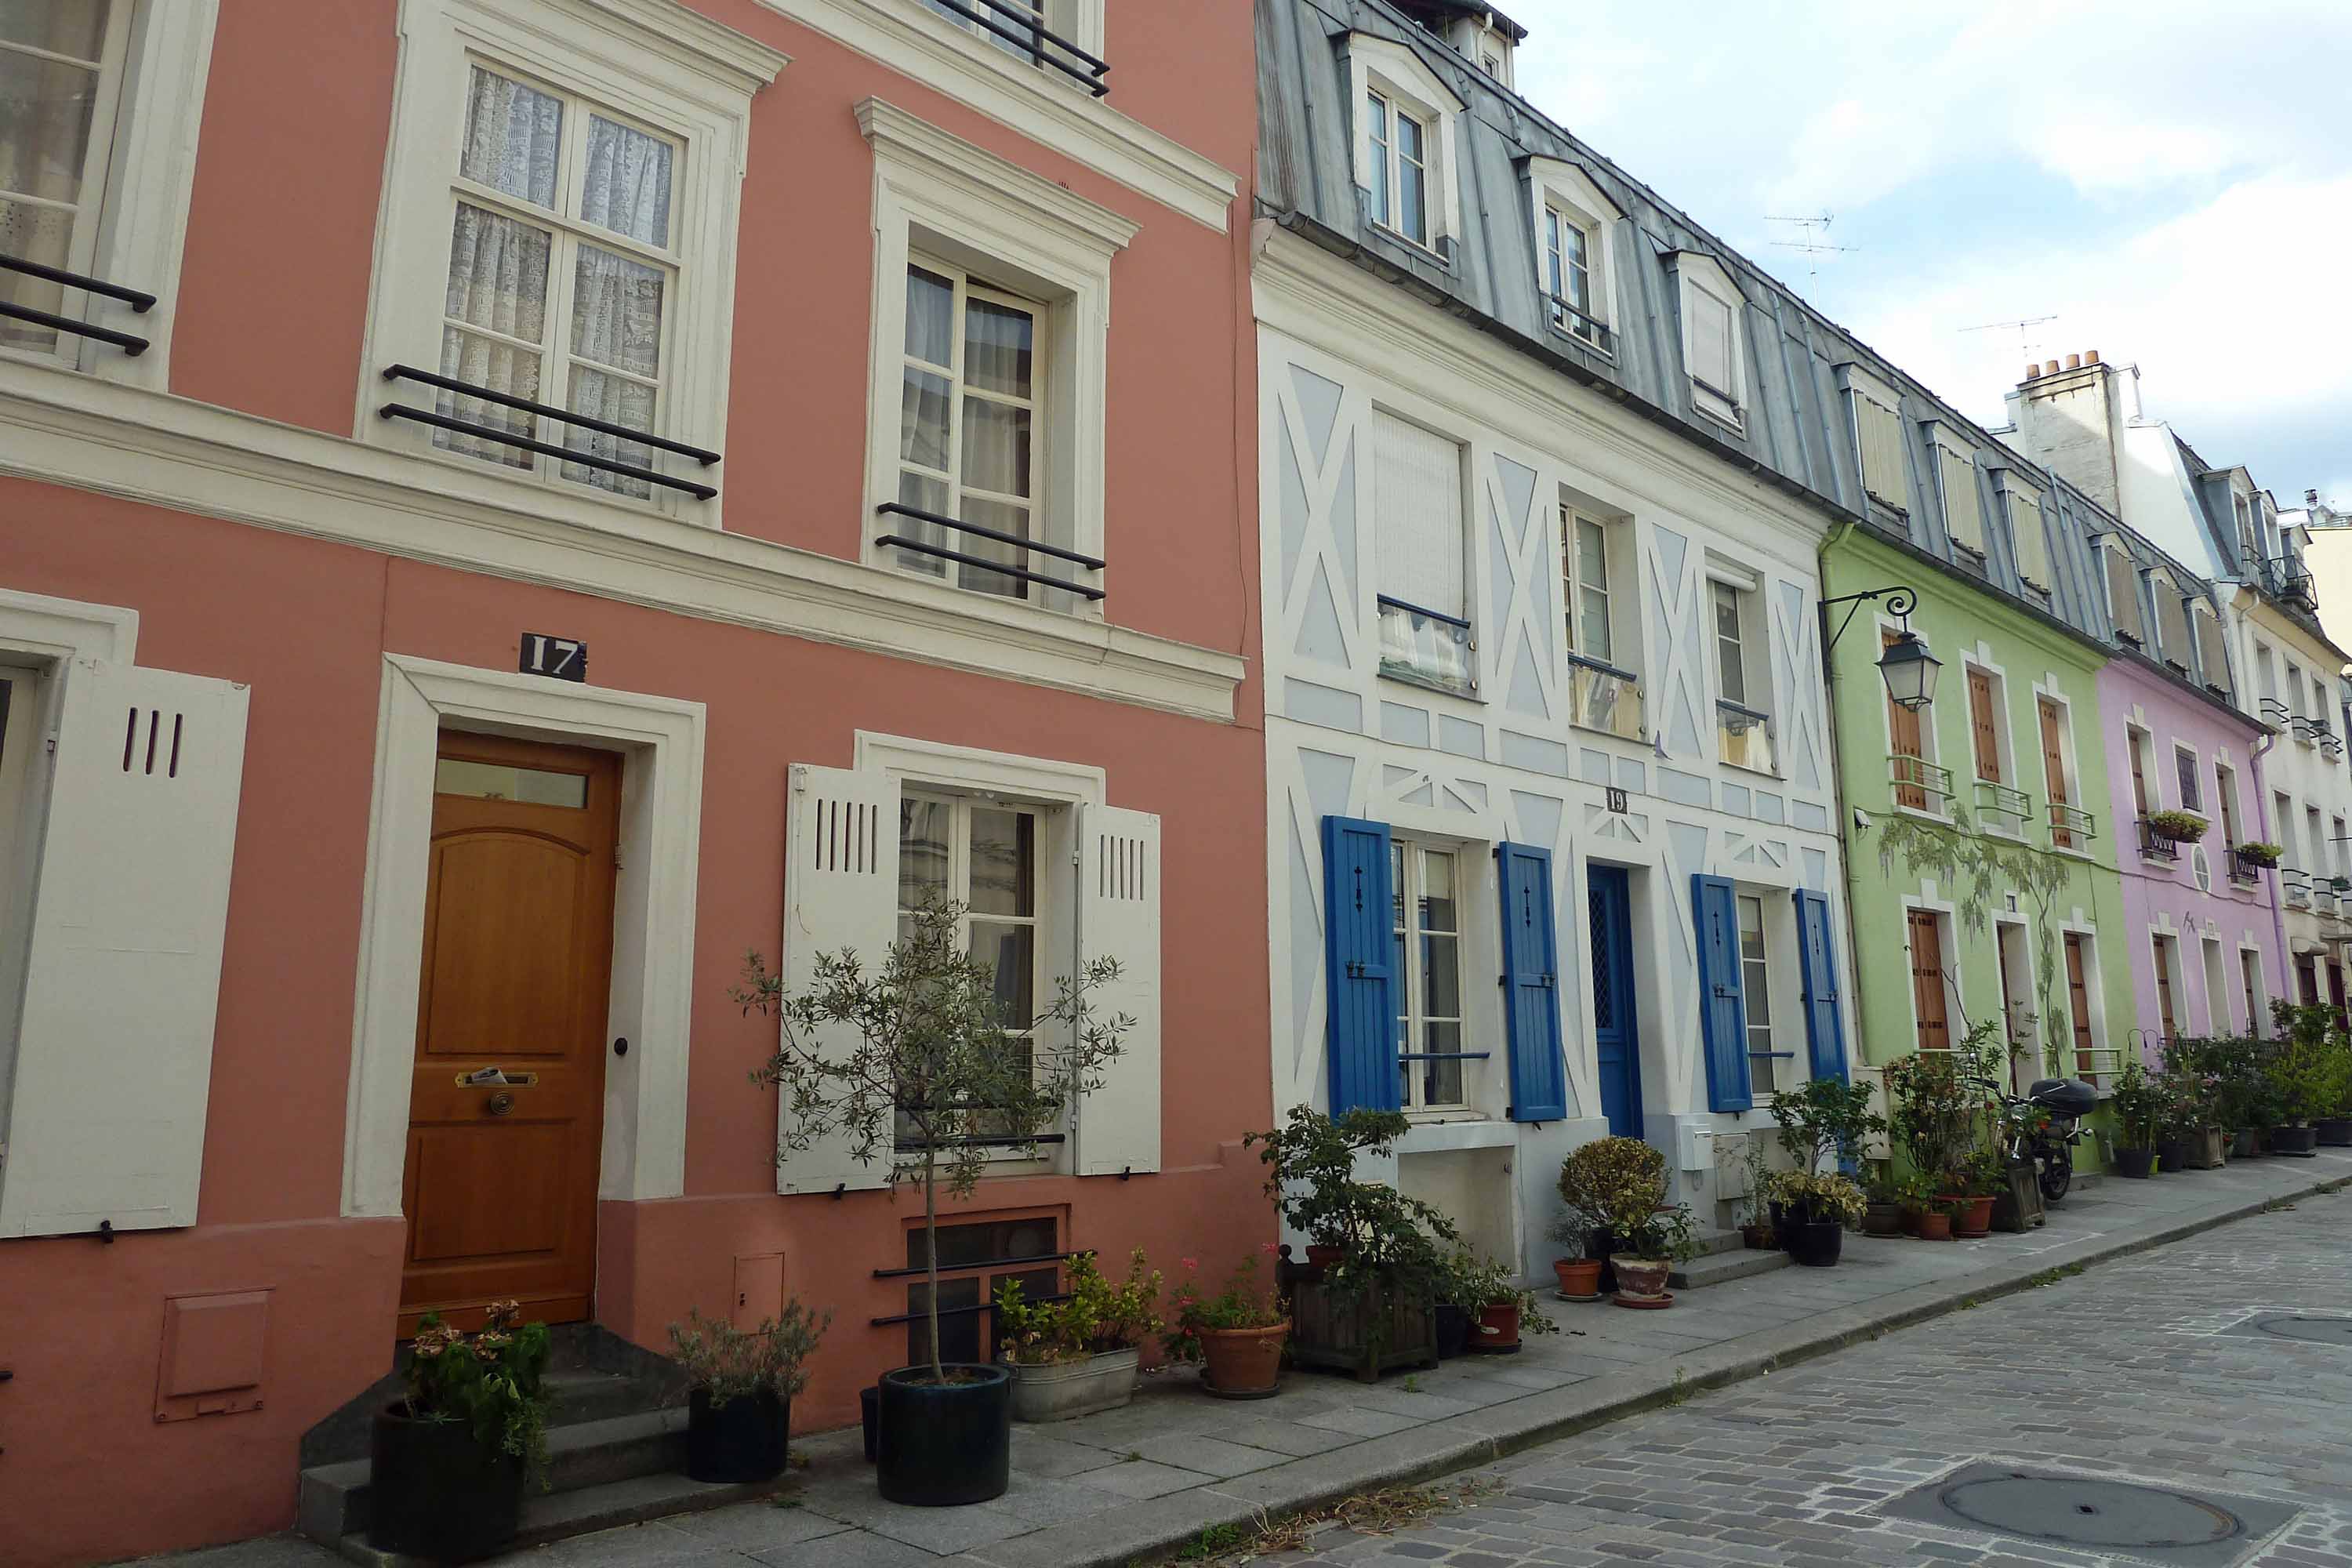 Paris, rue Crémieux, maisons colorées